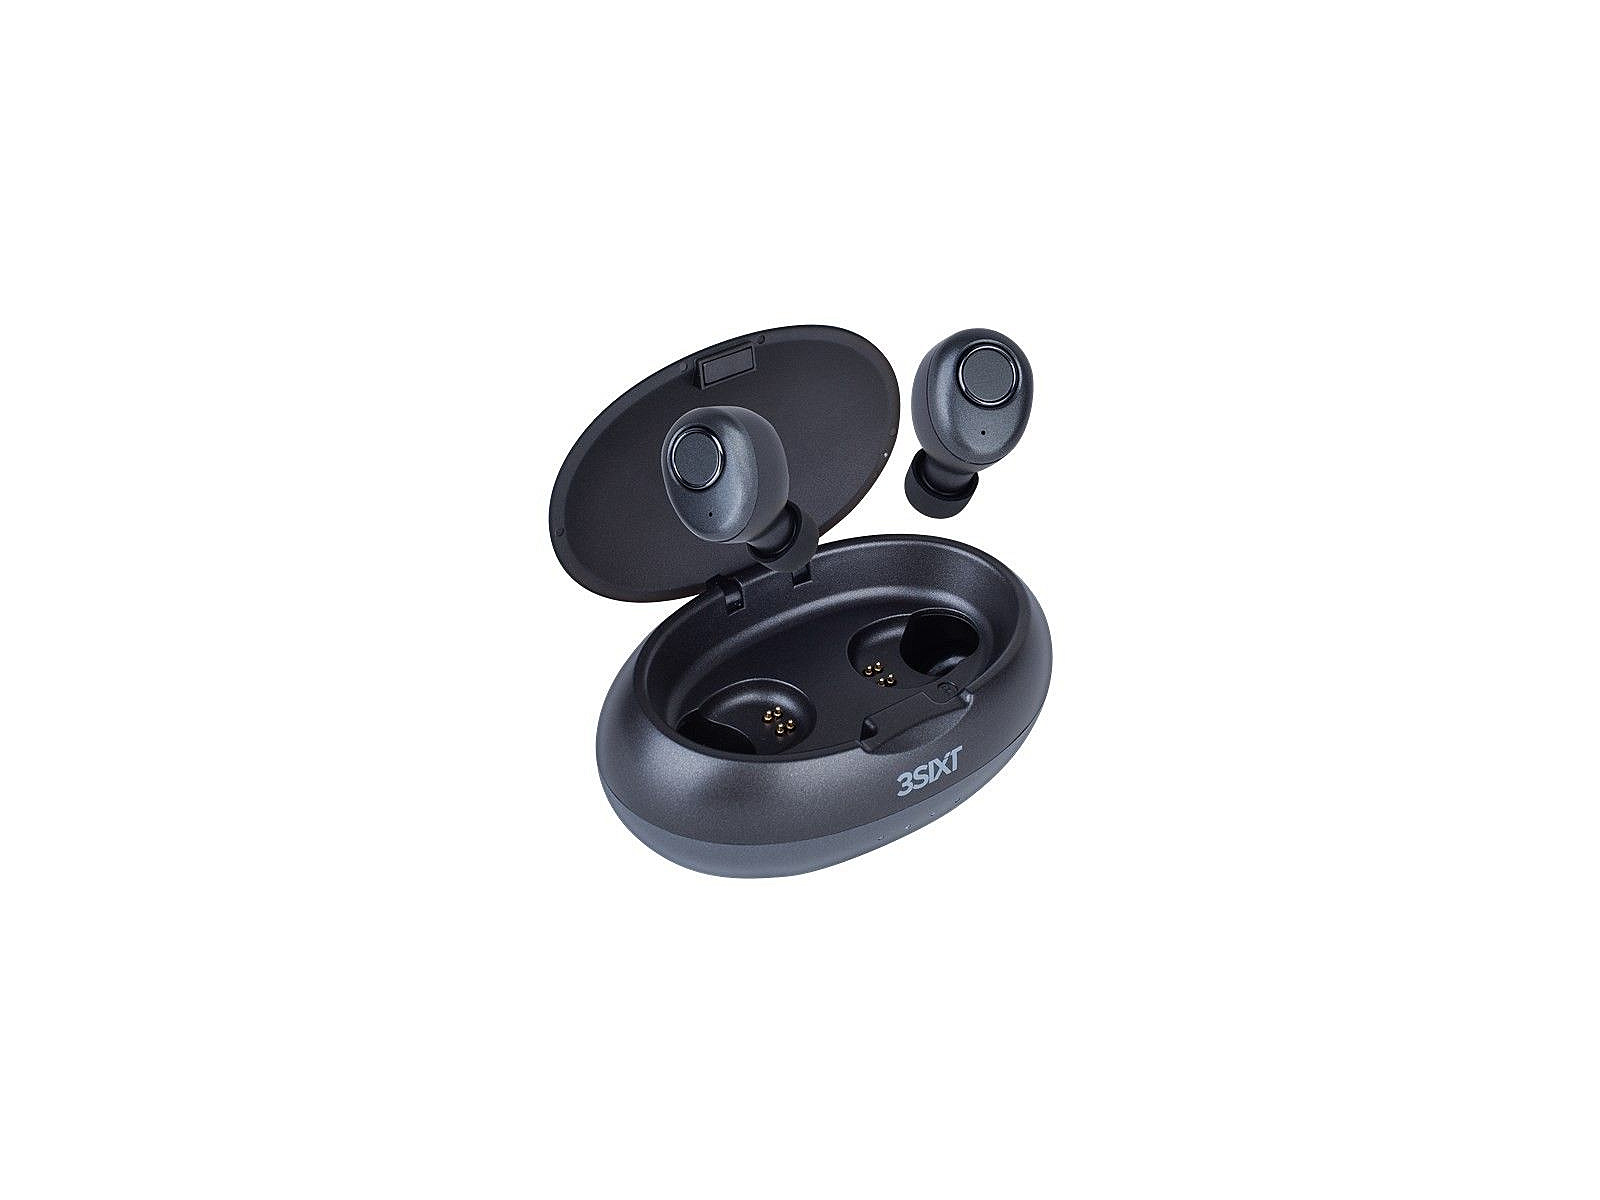 3sixt true studio wireless earbuds